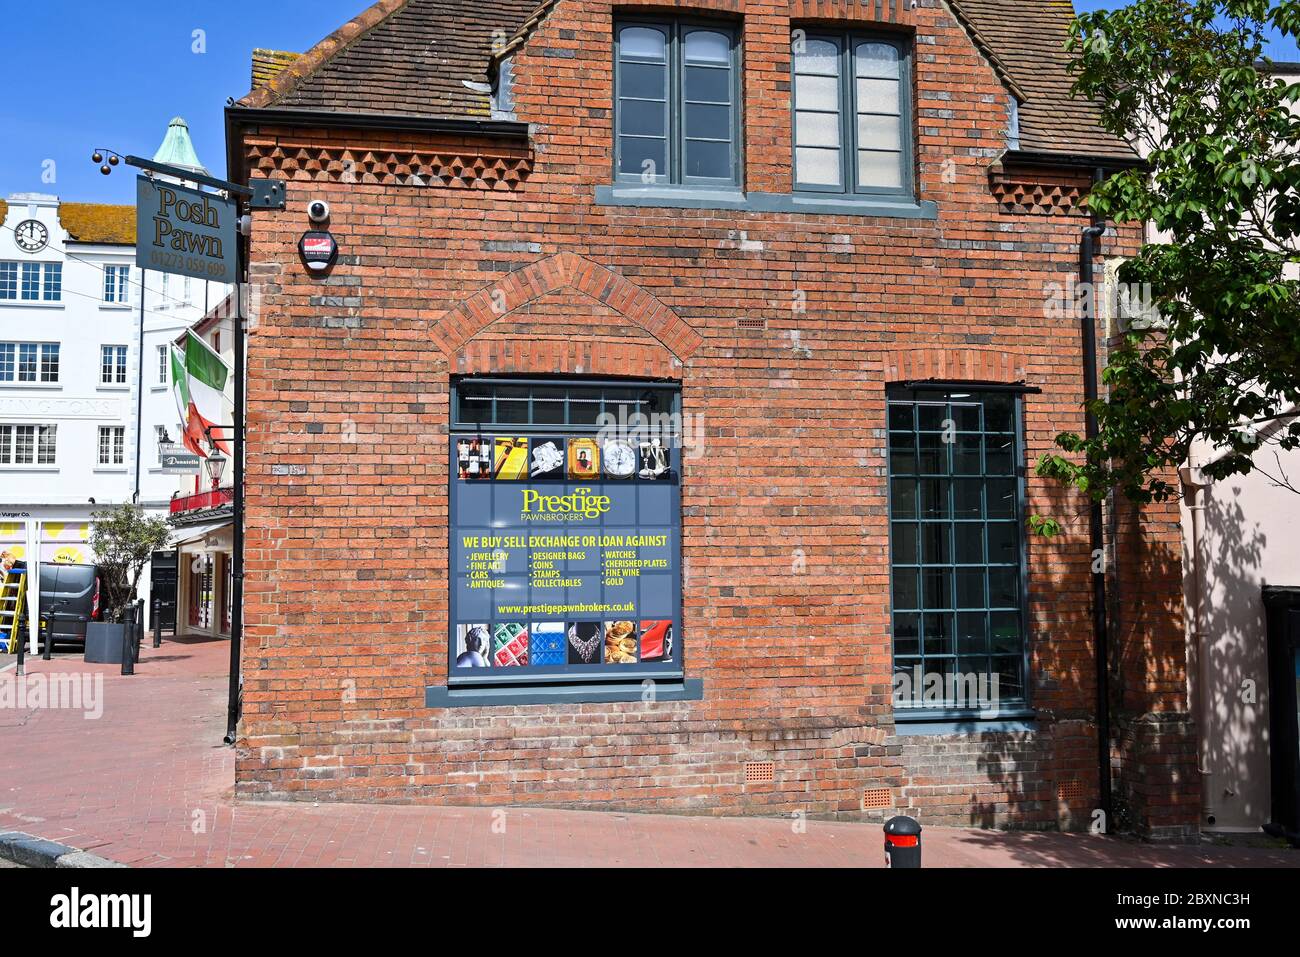 Prestige Pfandhäuser Shop in den Lanes Brighton Brighton UK . Die Geschäfte wurden durch das Posh Pawn Fernsehprogramm berühmt gemacht Stockfoto